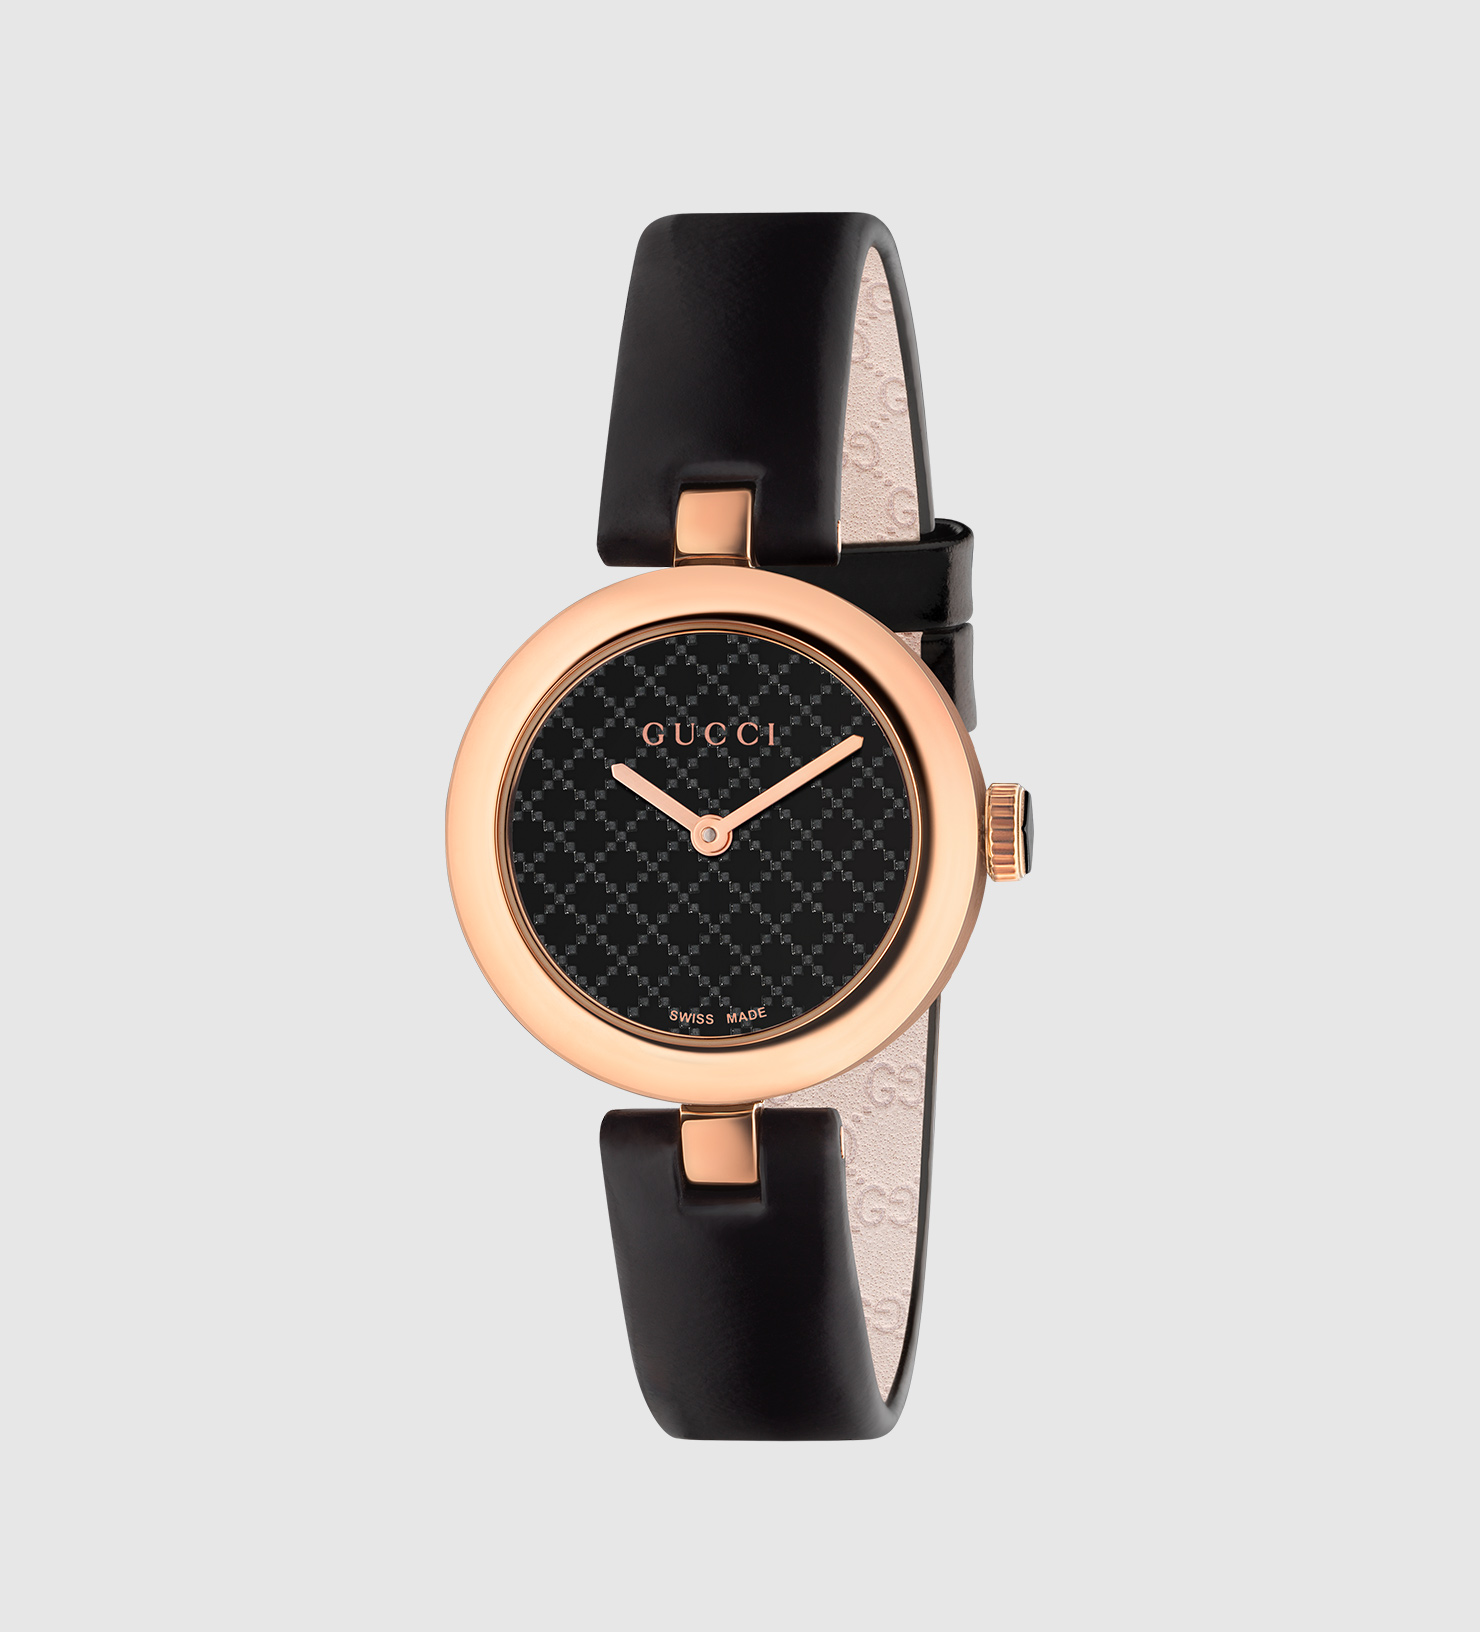 Gucci 2016 Cool 手錶將有趣和與眾不同的定義提升到了一個不同的水準  